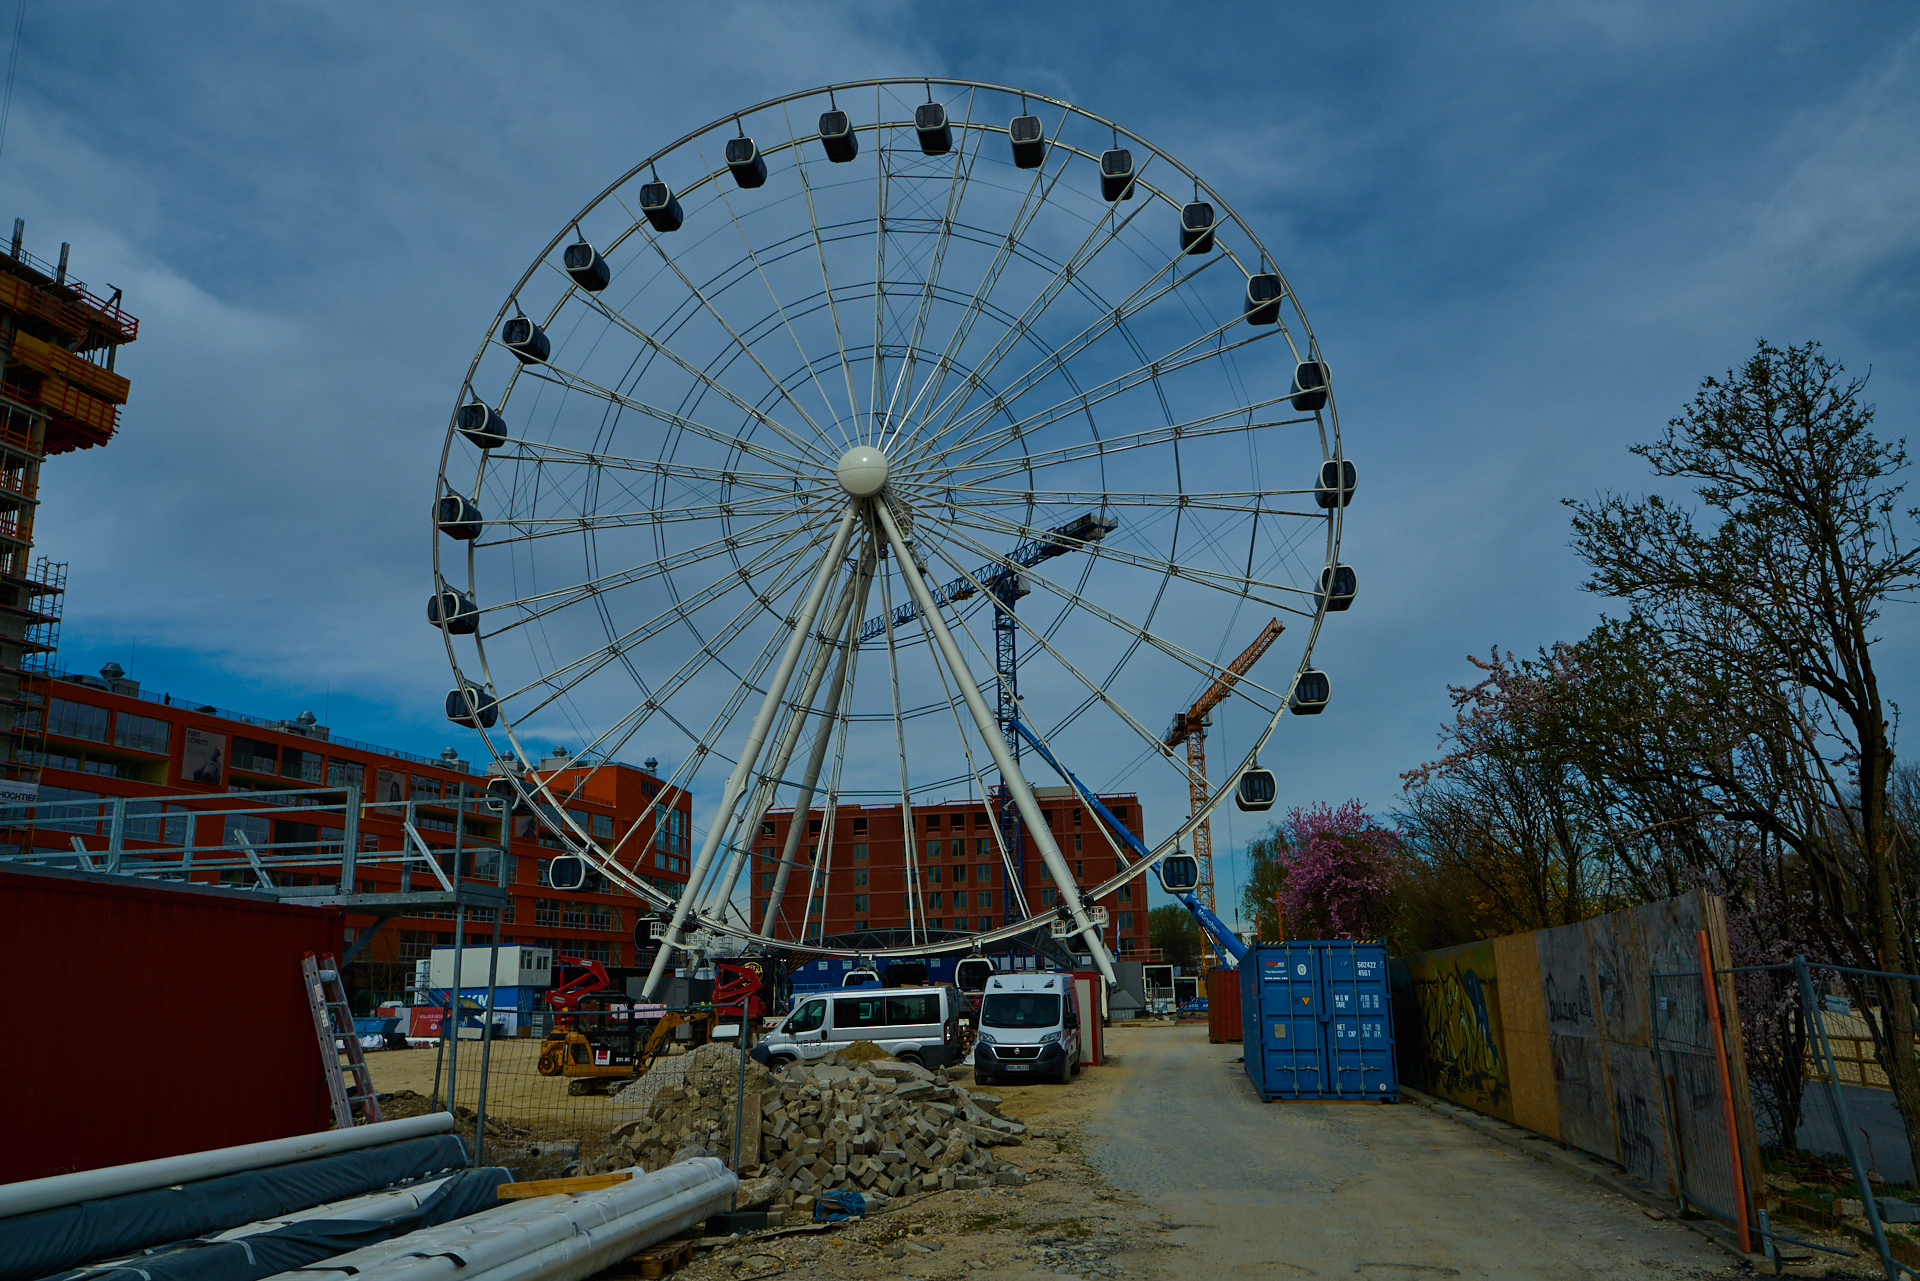 04.04.2019 - WERKSVIERTEL MITTE - Das weltgrößte mobile Riesenrad steht